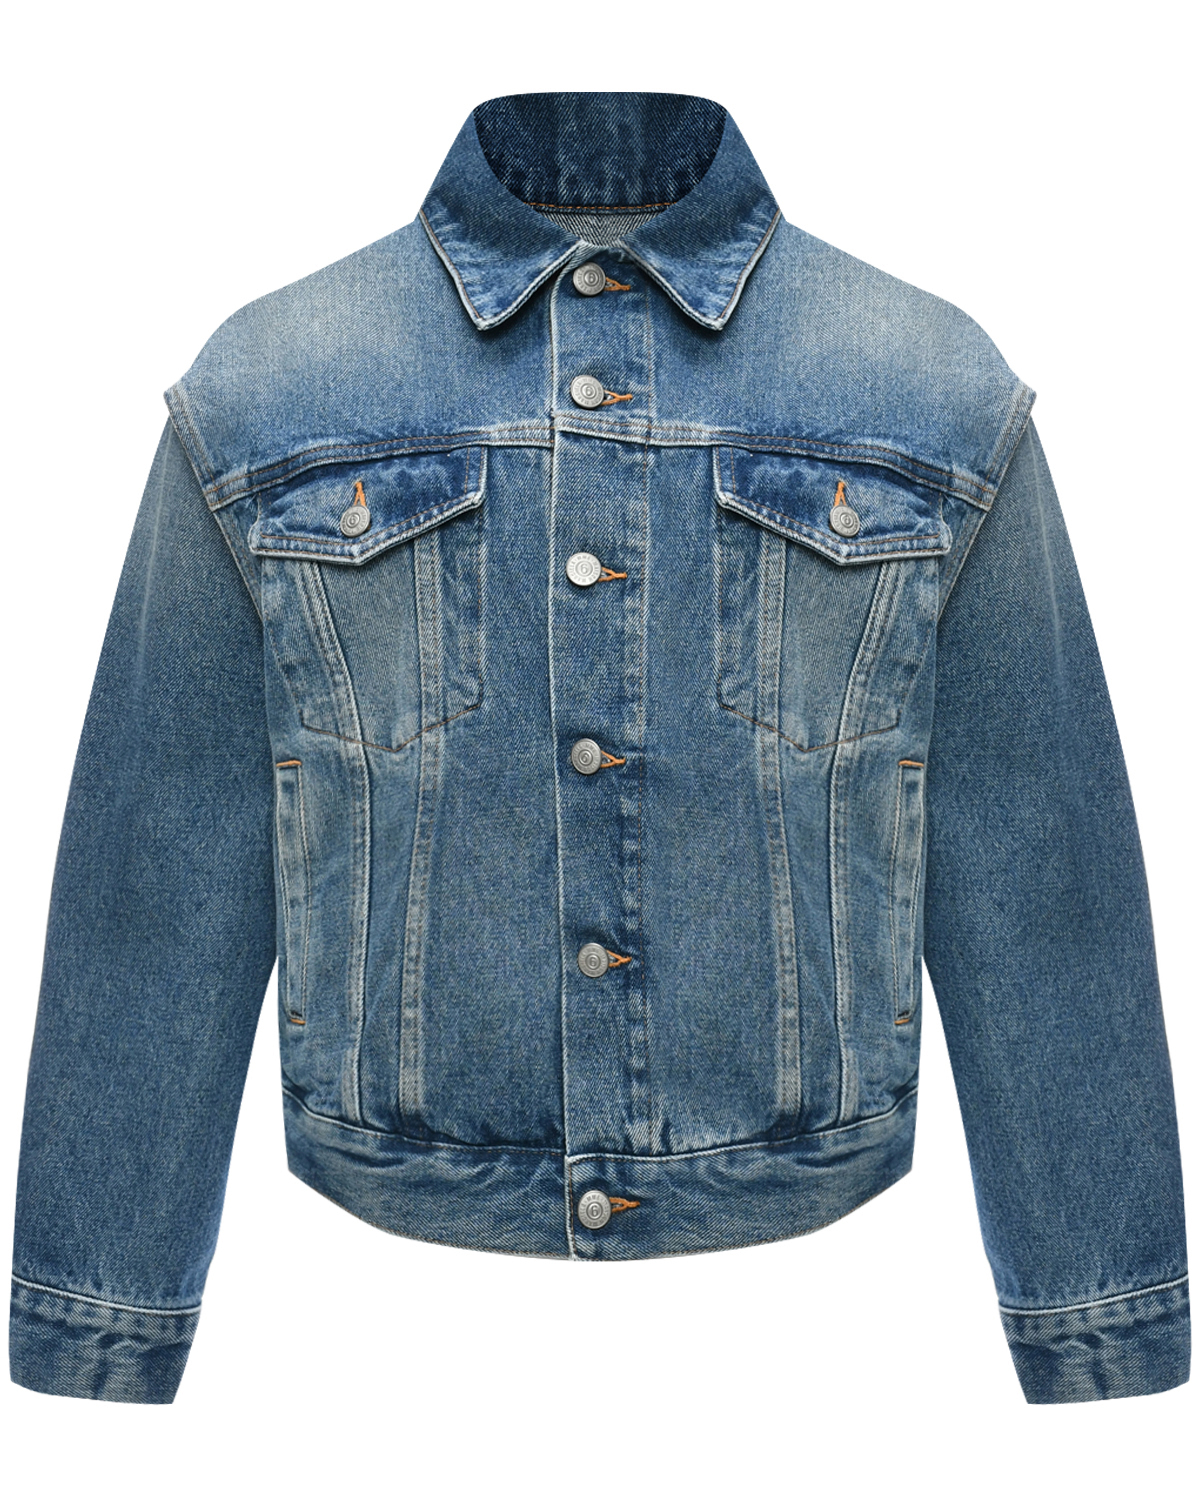 Джинсовая куртка с прорезями на рукавах MM6 Maison Margiela, размер 40, цвет голубой